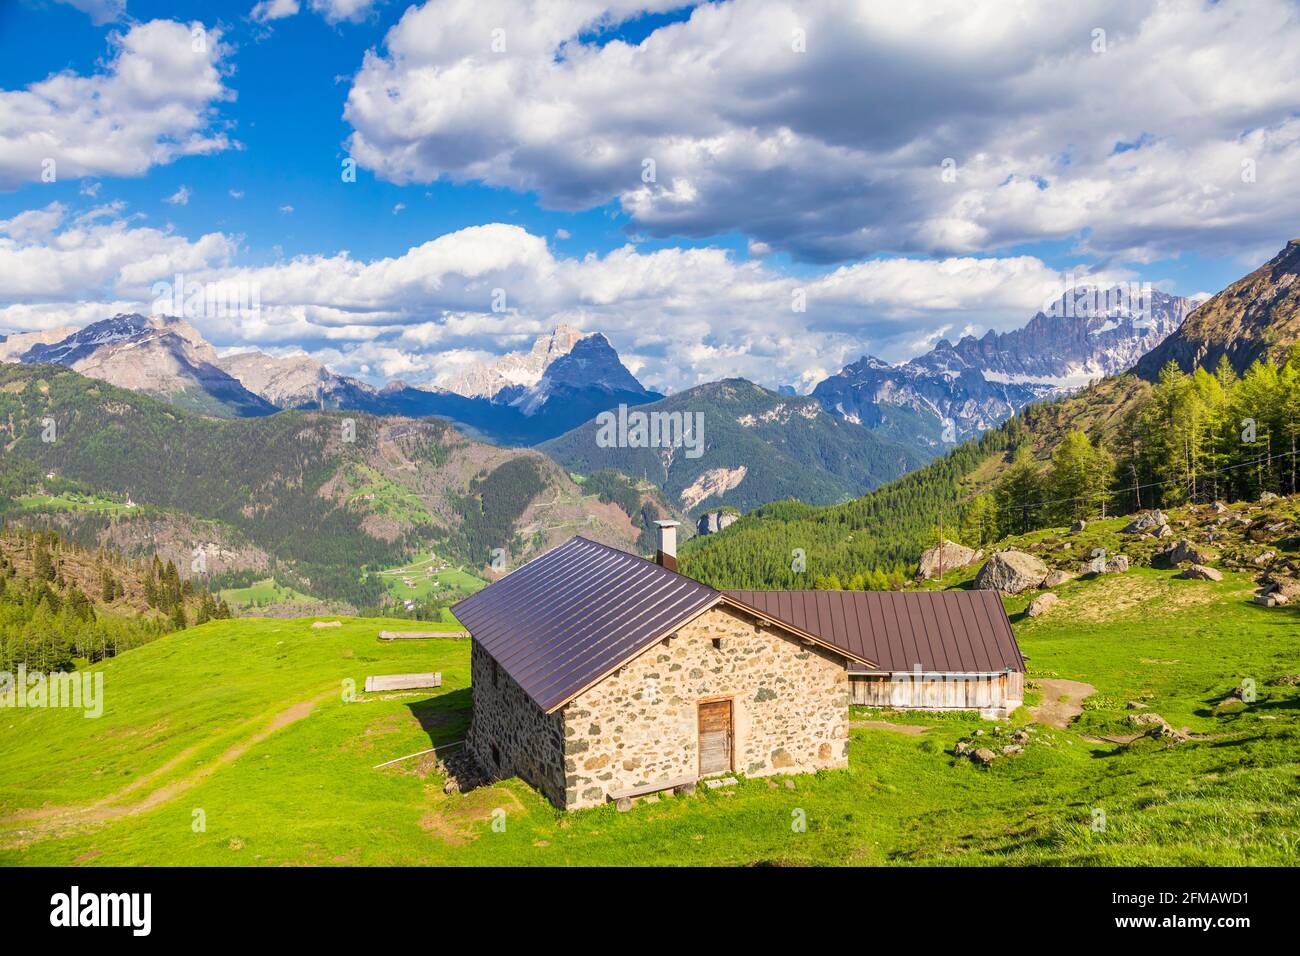 Berghütten im Sommer, ländliche Höhenlandschaft in den dolomiten, Almen von Laste, rocca Pietore, Belluno, Venetien, Italien Stockfoto